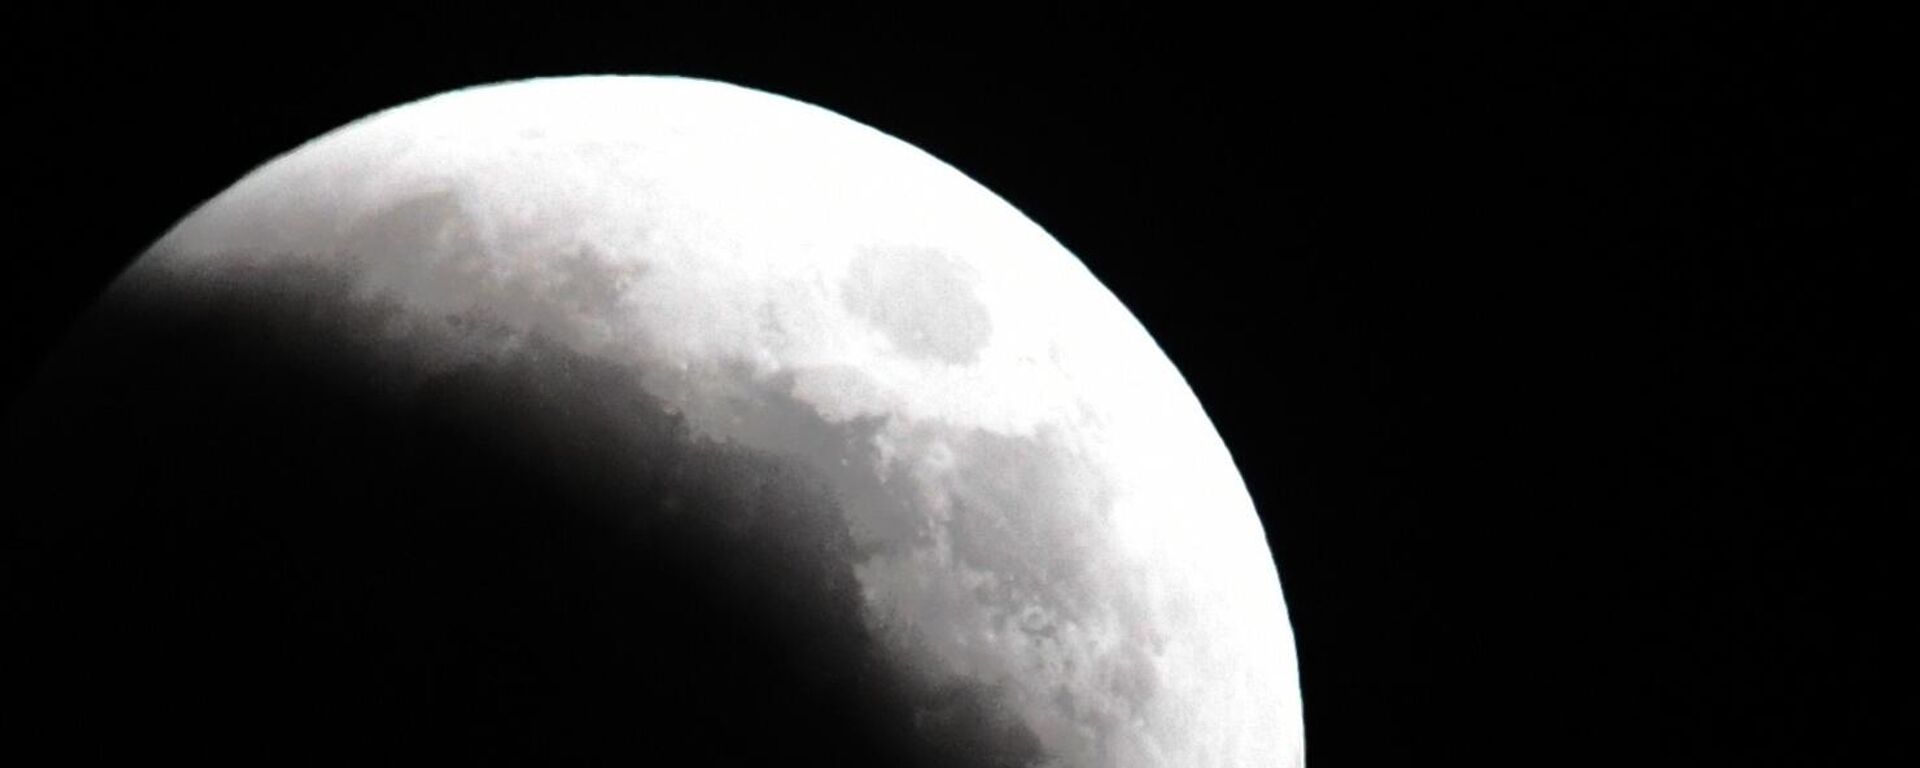 القمر خلال الكسوف في فلاديفوستوك الروسية. في 8 نوفمبر، بعد الظهر، سيُغطى القمر جزئيًا بظل الأرض، وسيغطي القمر أورانوس ويتحول إلى اللون الأحمر القرمزي (القمر الدموي). سيكمل هذا الحدث ممر الكسوف الذي بدأ في أكتوبر/ تشرين الأول. في المرة القادمة يمكن رؤية هذه الظاهرة فقط في غضون سنوات قليلة. - سبوتنيك عربي, 1920, 03.04.2023